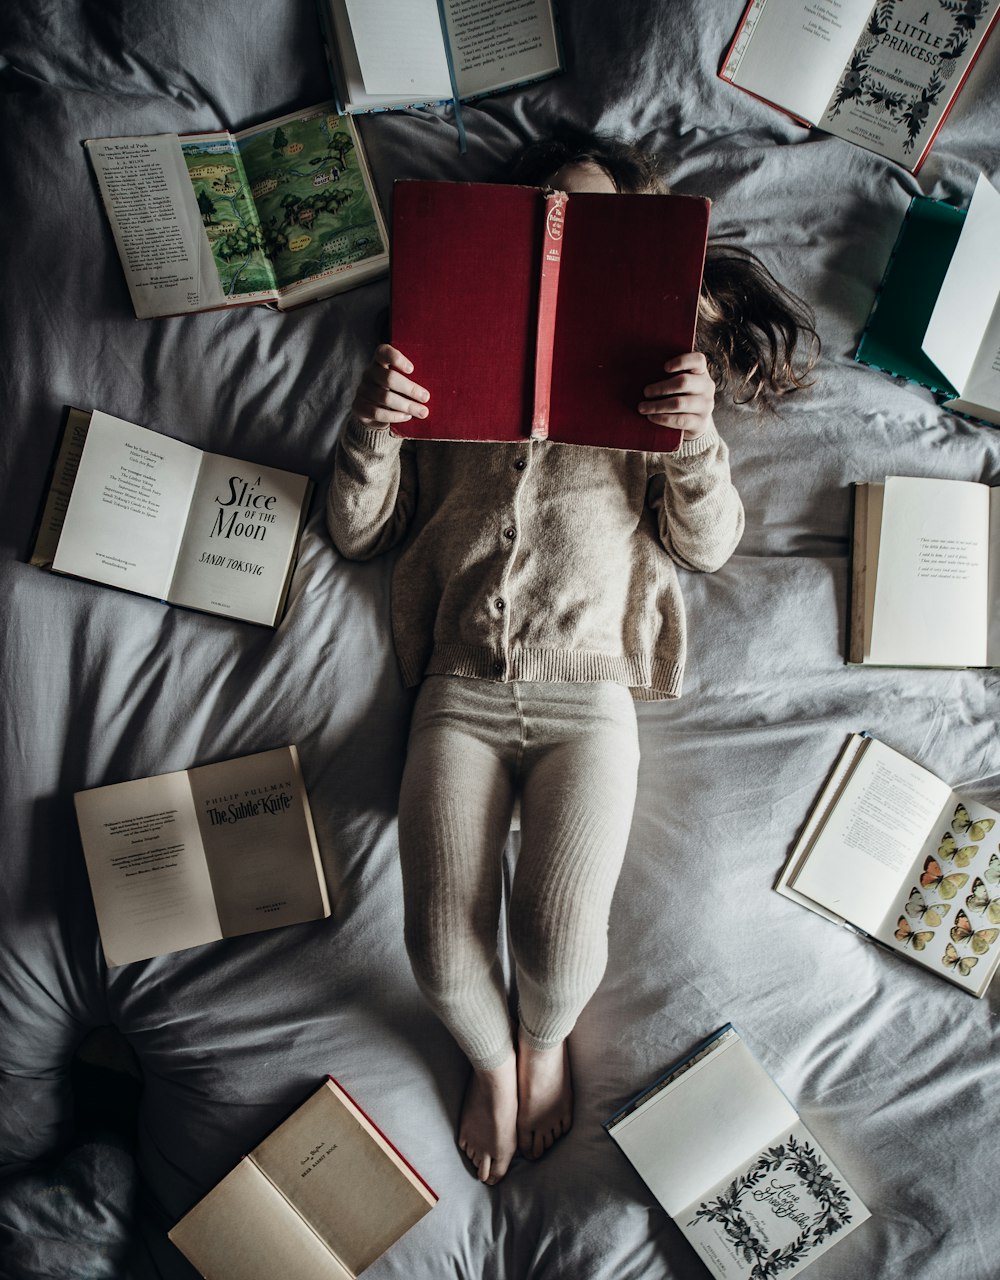 Ein kleines Mädchen, das mit vielen Büchern auf einem Bett liegt